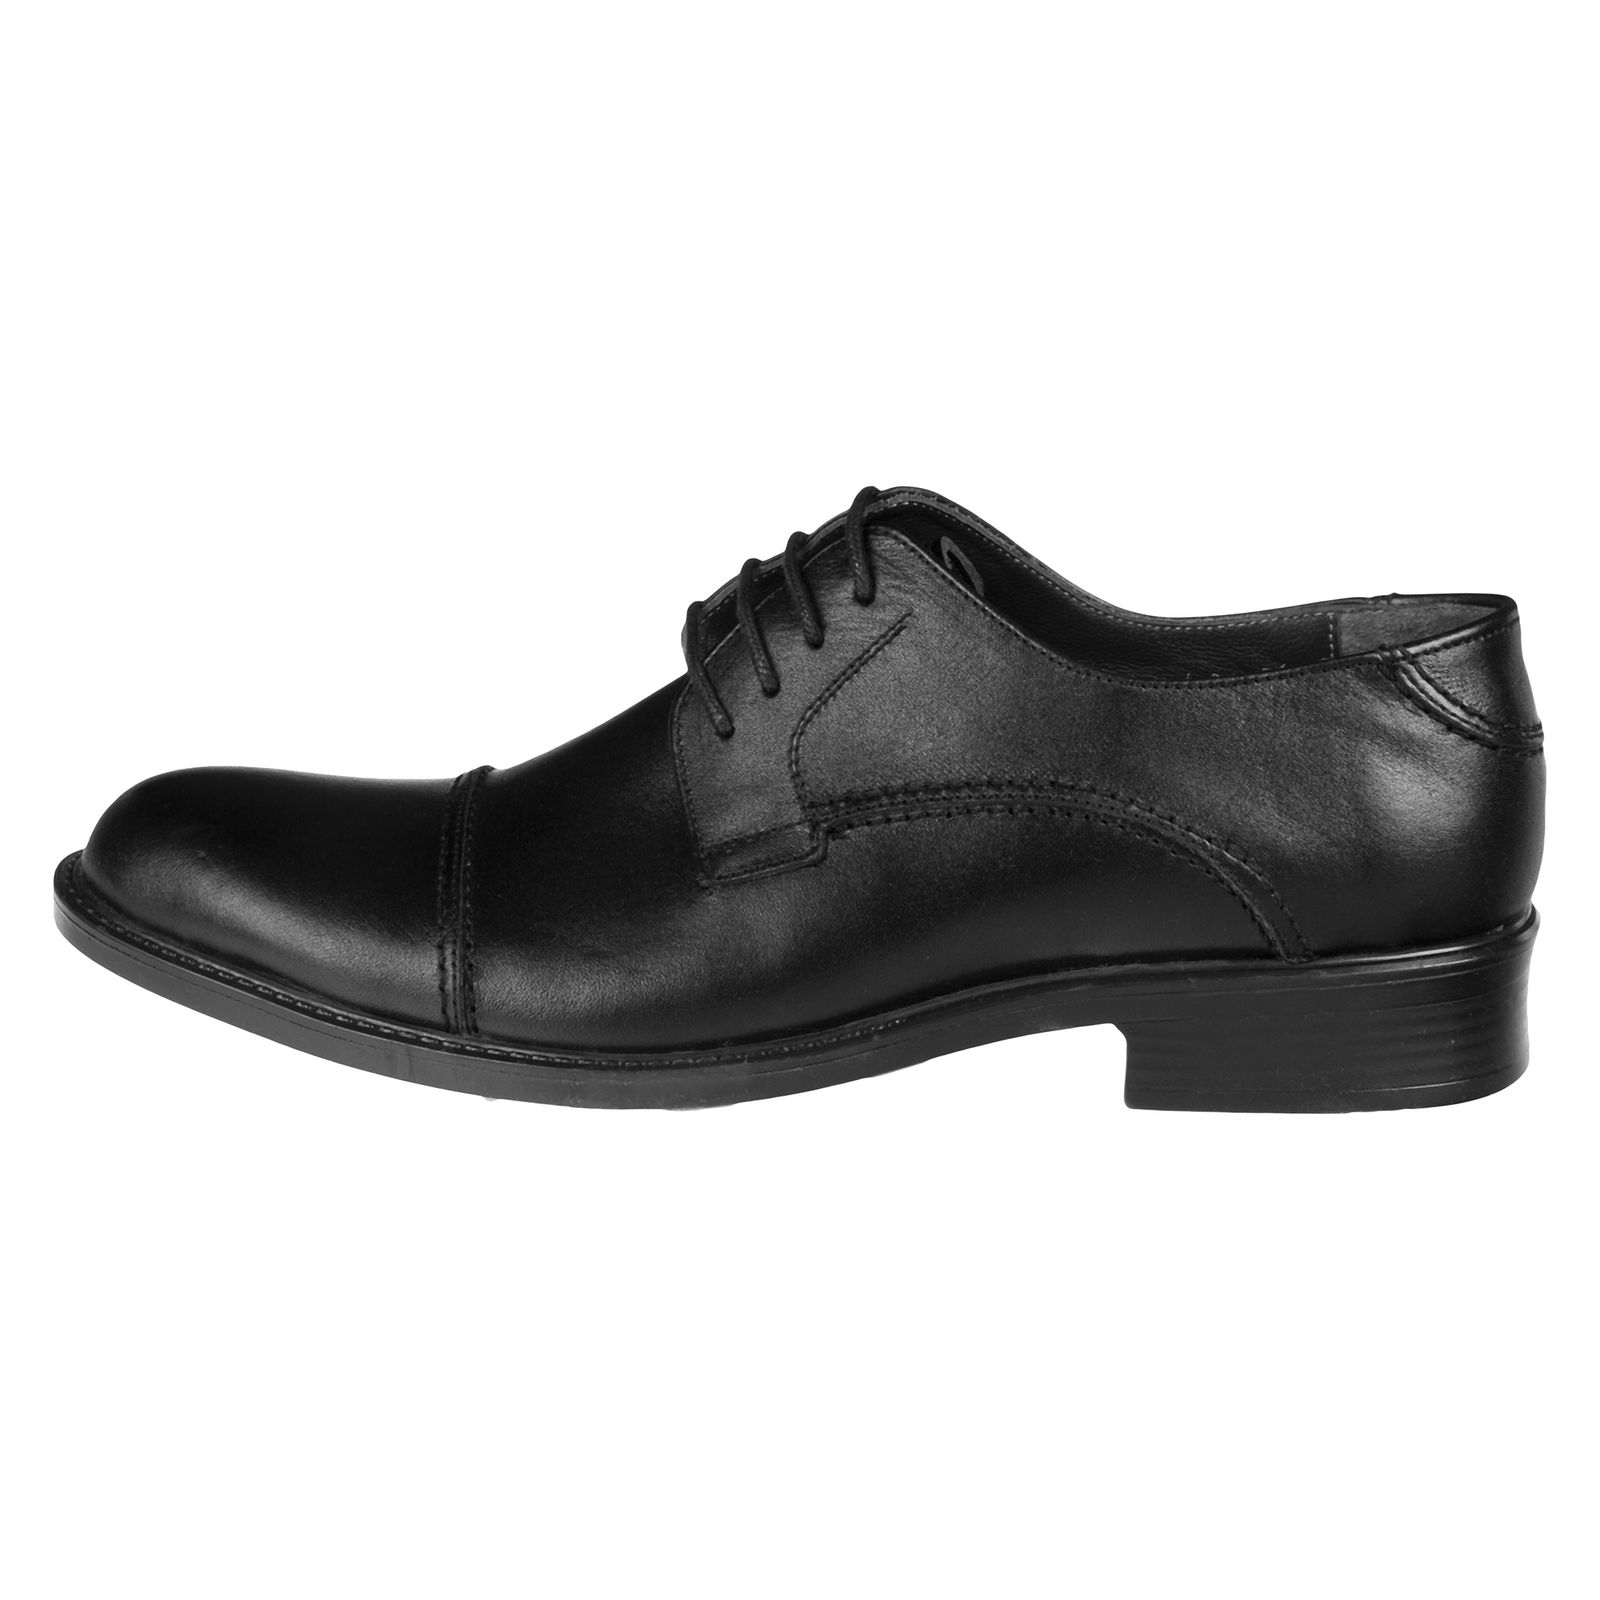 کفش مردانه دلفارد مدل 7219c503-101 - مشکی - 1